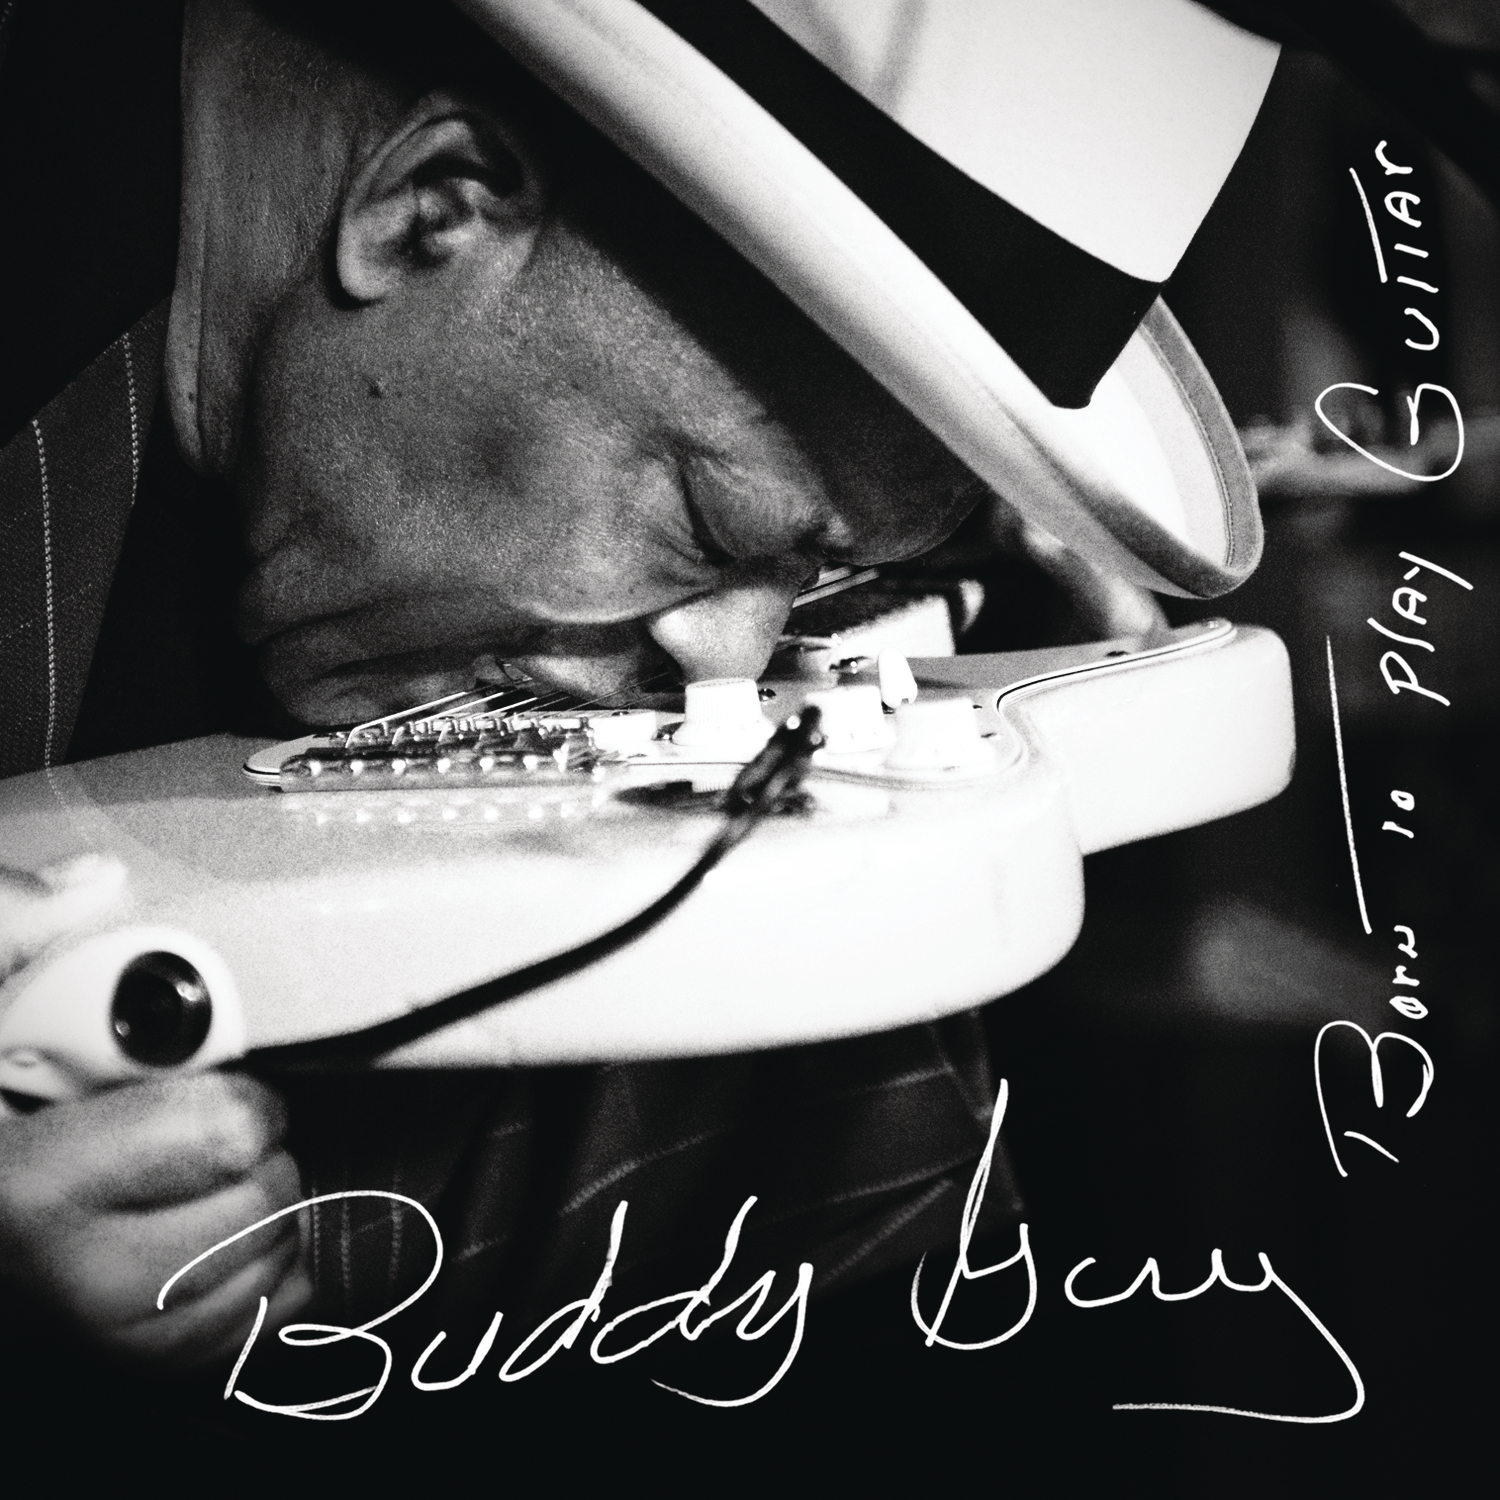 Buddy Guy - Born To Play Guitar in DTS-HD. (op speciaal verzoek)